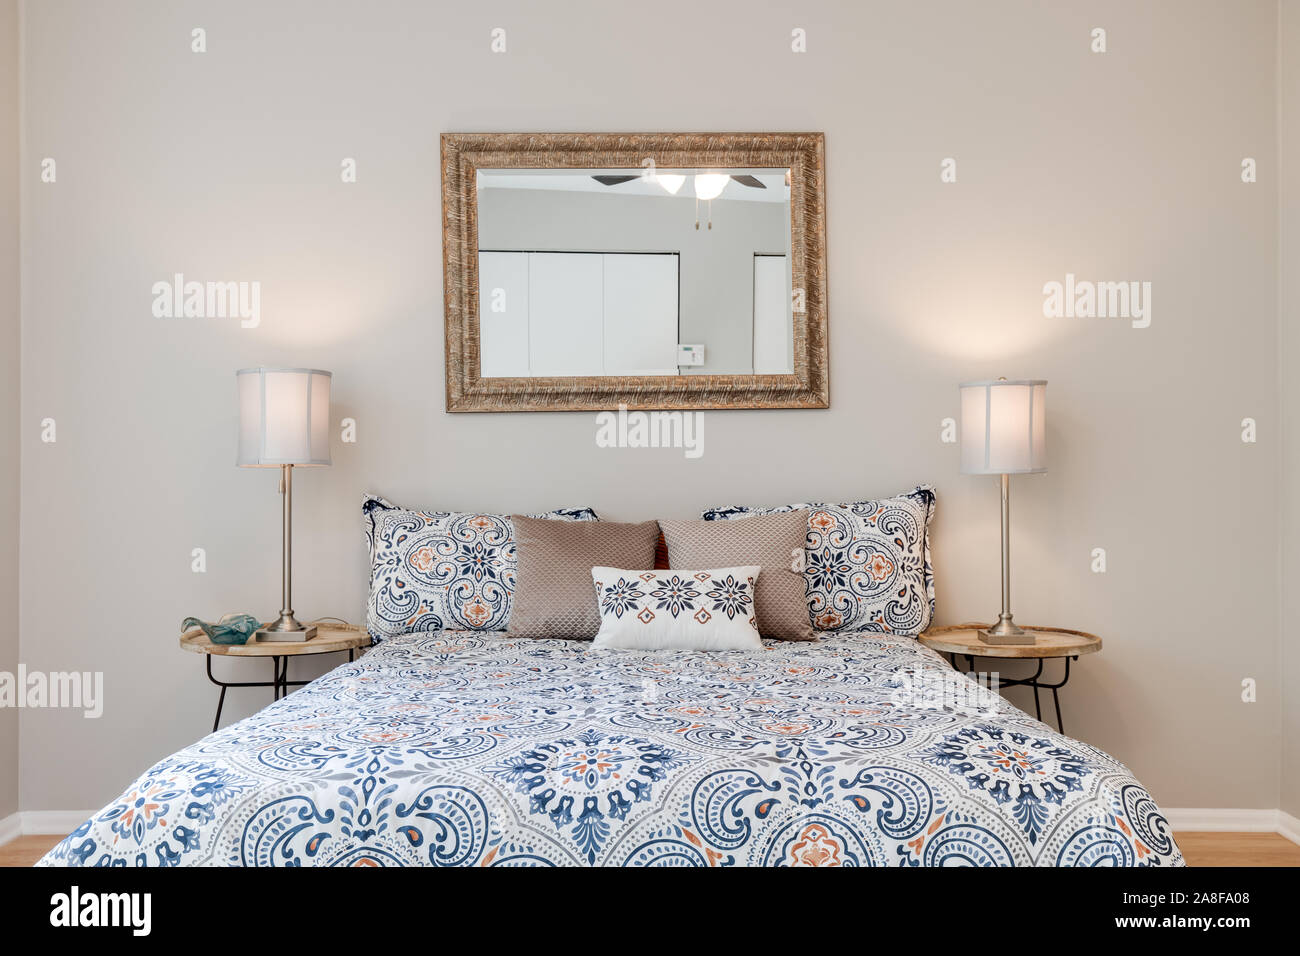 Ein Bett im Schlafzimmer zu einer Residenz zentriert mit zwei Lampen auf dem Nachttisch und ein Spiegel hängt über dem Bett. Stockfoto